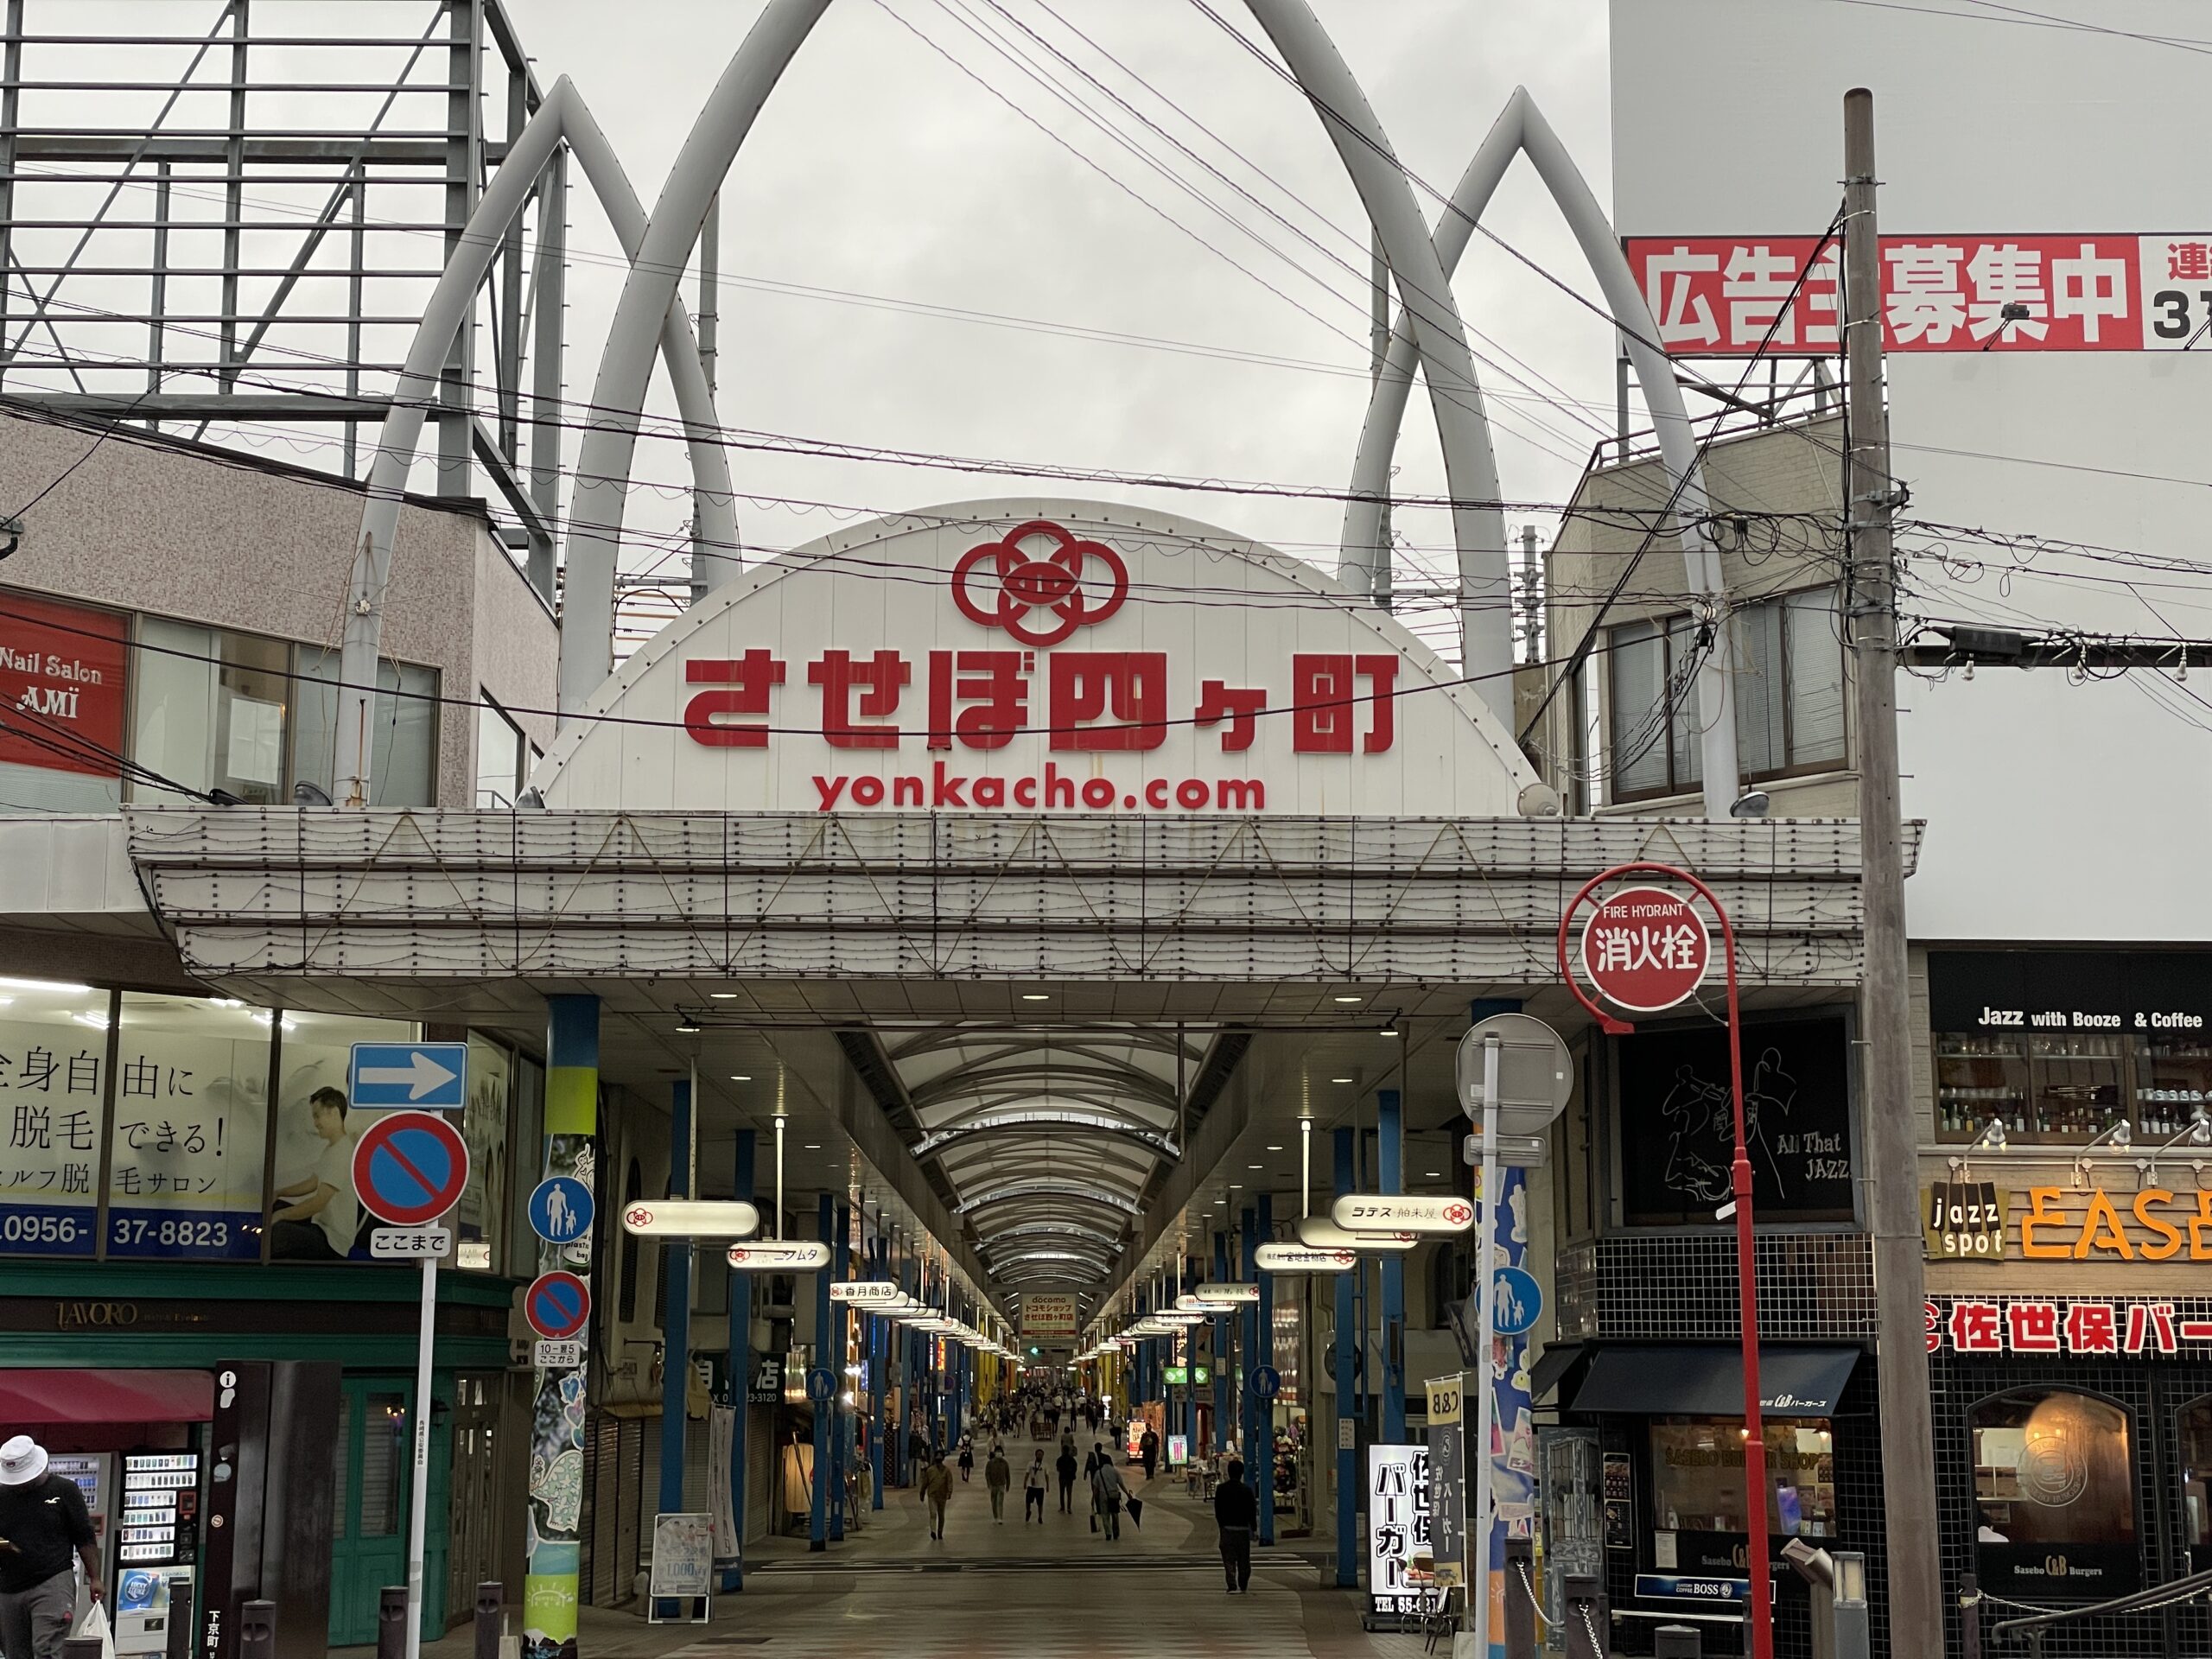 Der Eingang zur überdachten Einkaufsstrasse Yonkacho von Sasebo